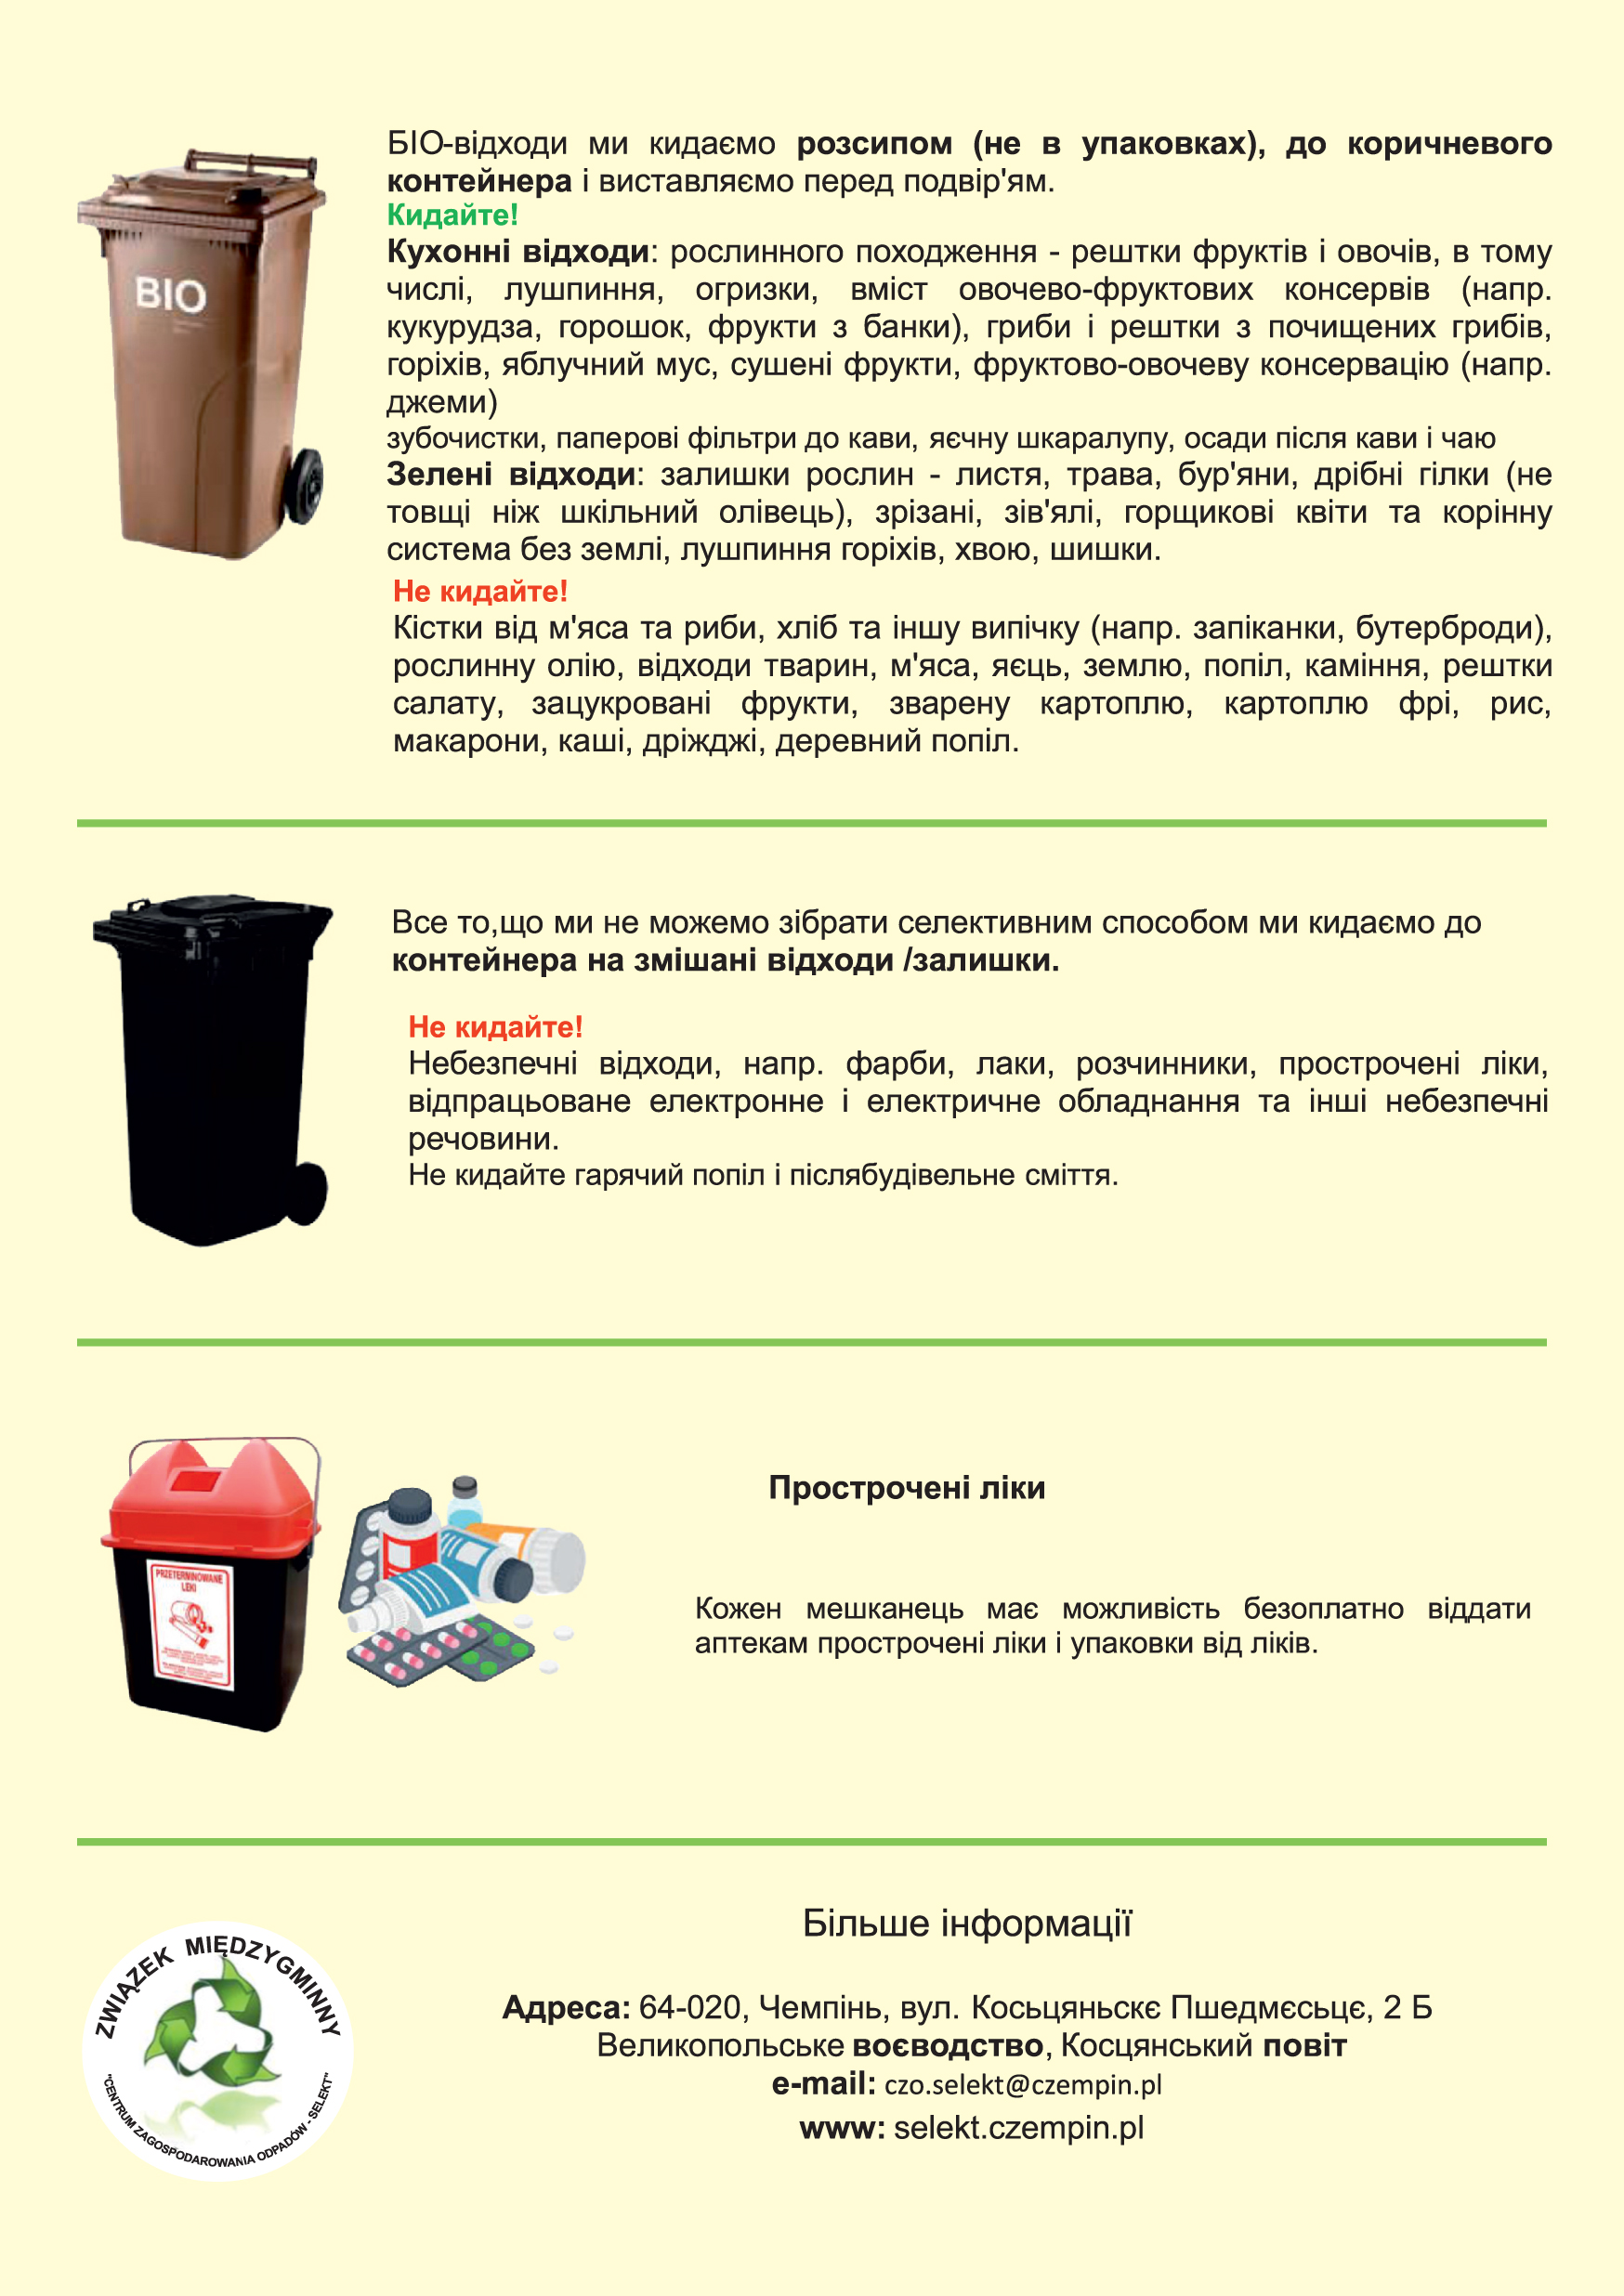 Związek Międzygminnego „Centrum Zagospodarowania Odpadów-SELEKT” w Czempiniu przygotował ulotkę na temat segregacji odpadów w języku ukraińskim.